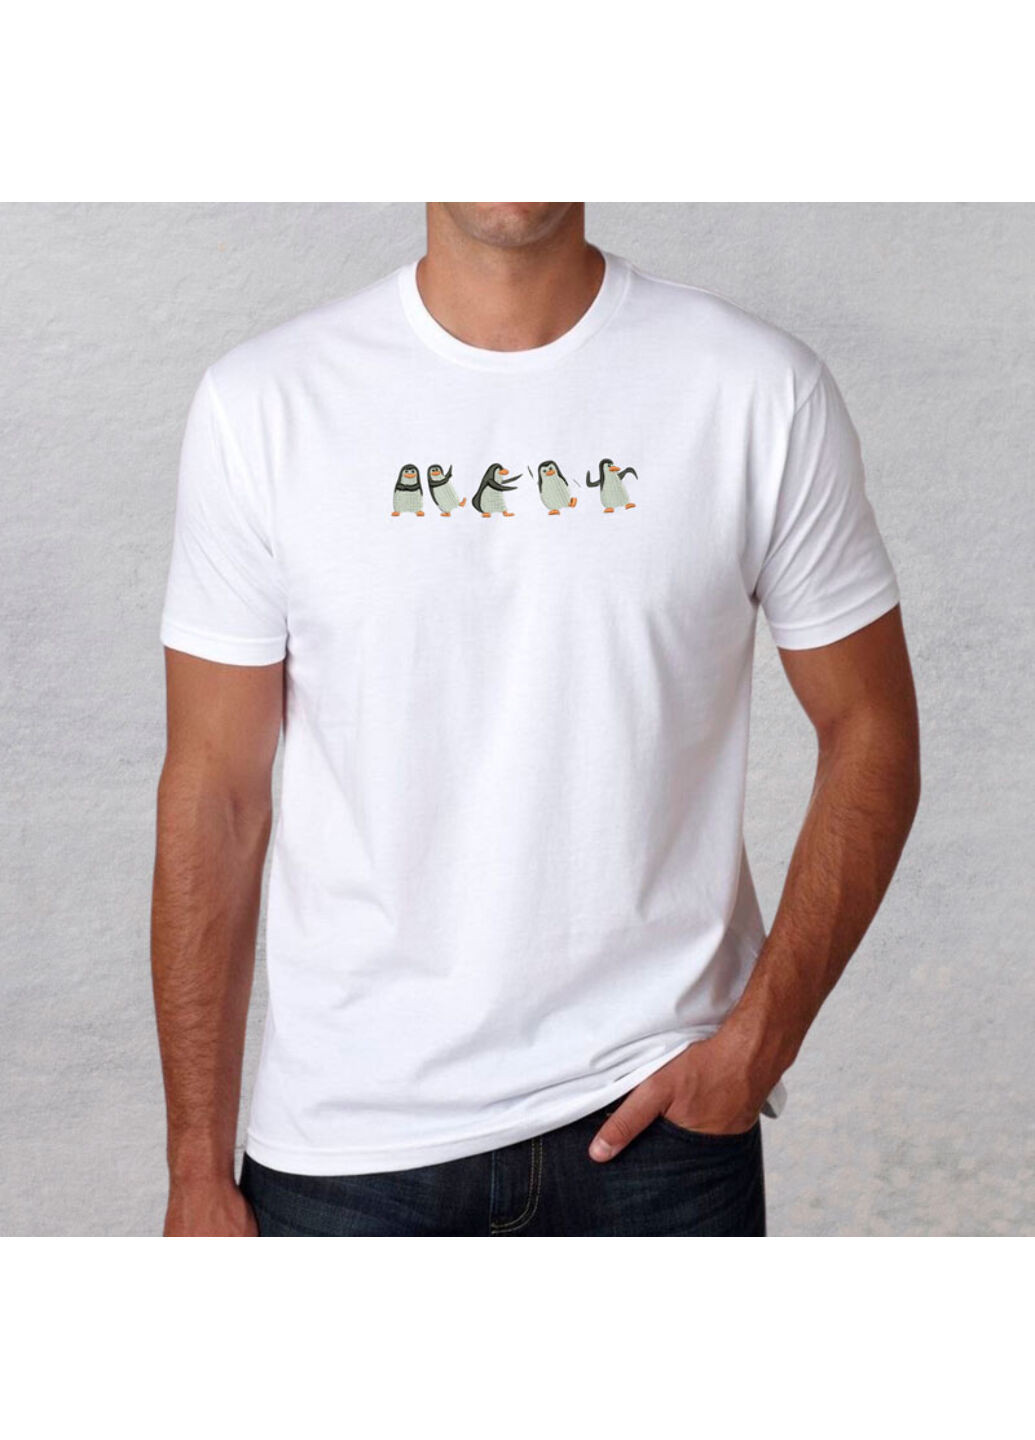 Белая футболка с вышивкой пингвинов 01-1 мужская белый xl No Brand